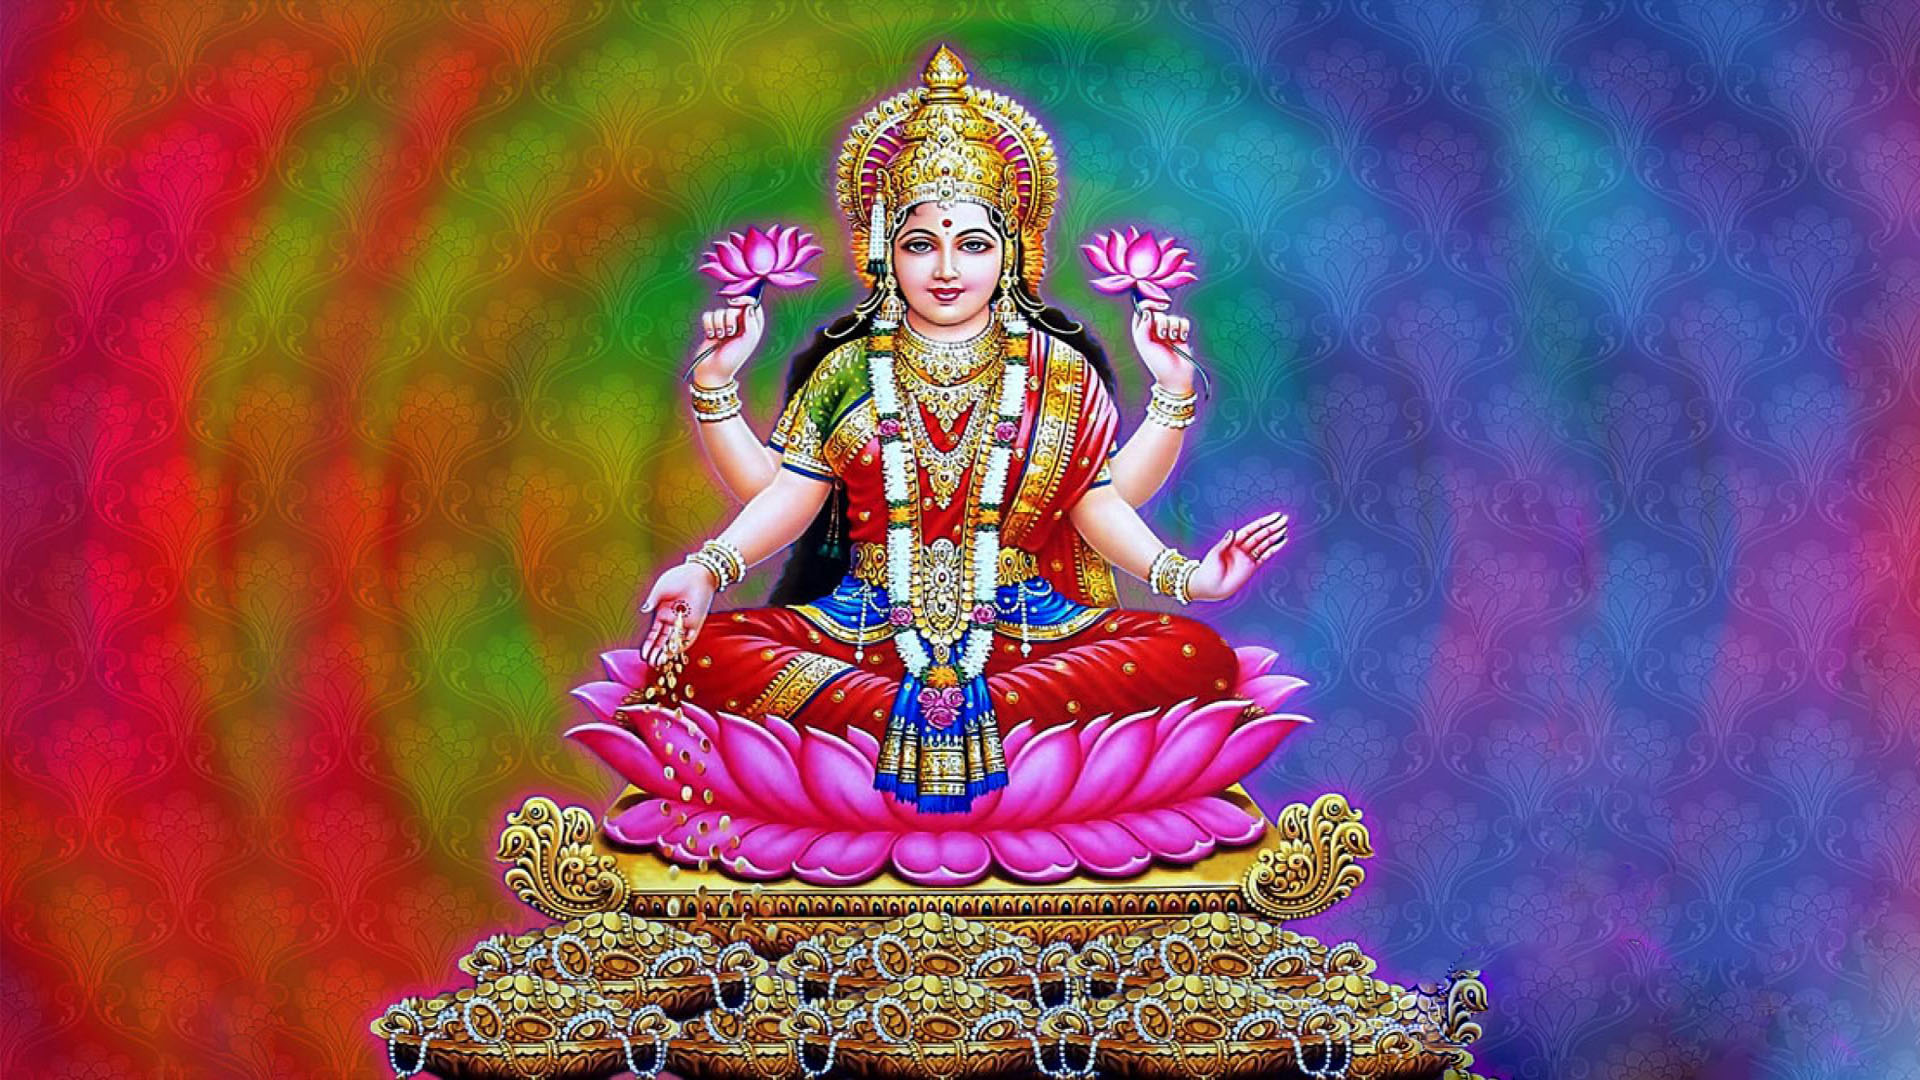 god lakshmi images full hd wallpaper goddess maa lakshmi god lakshmi images full hd wallpaper